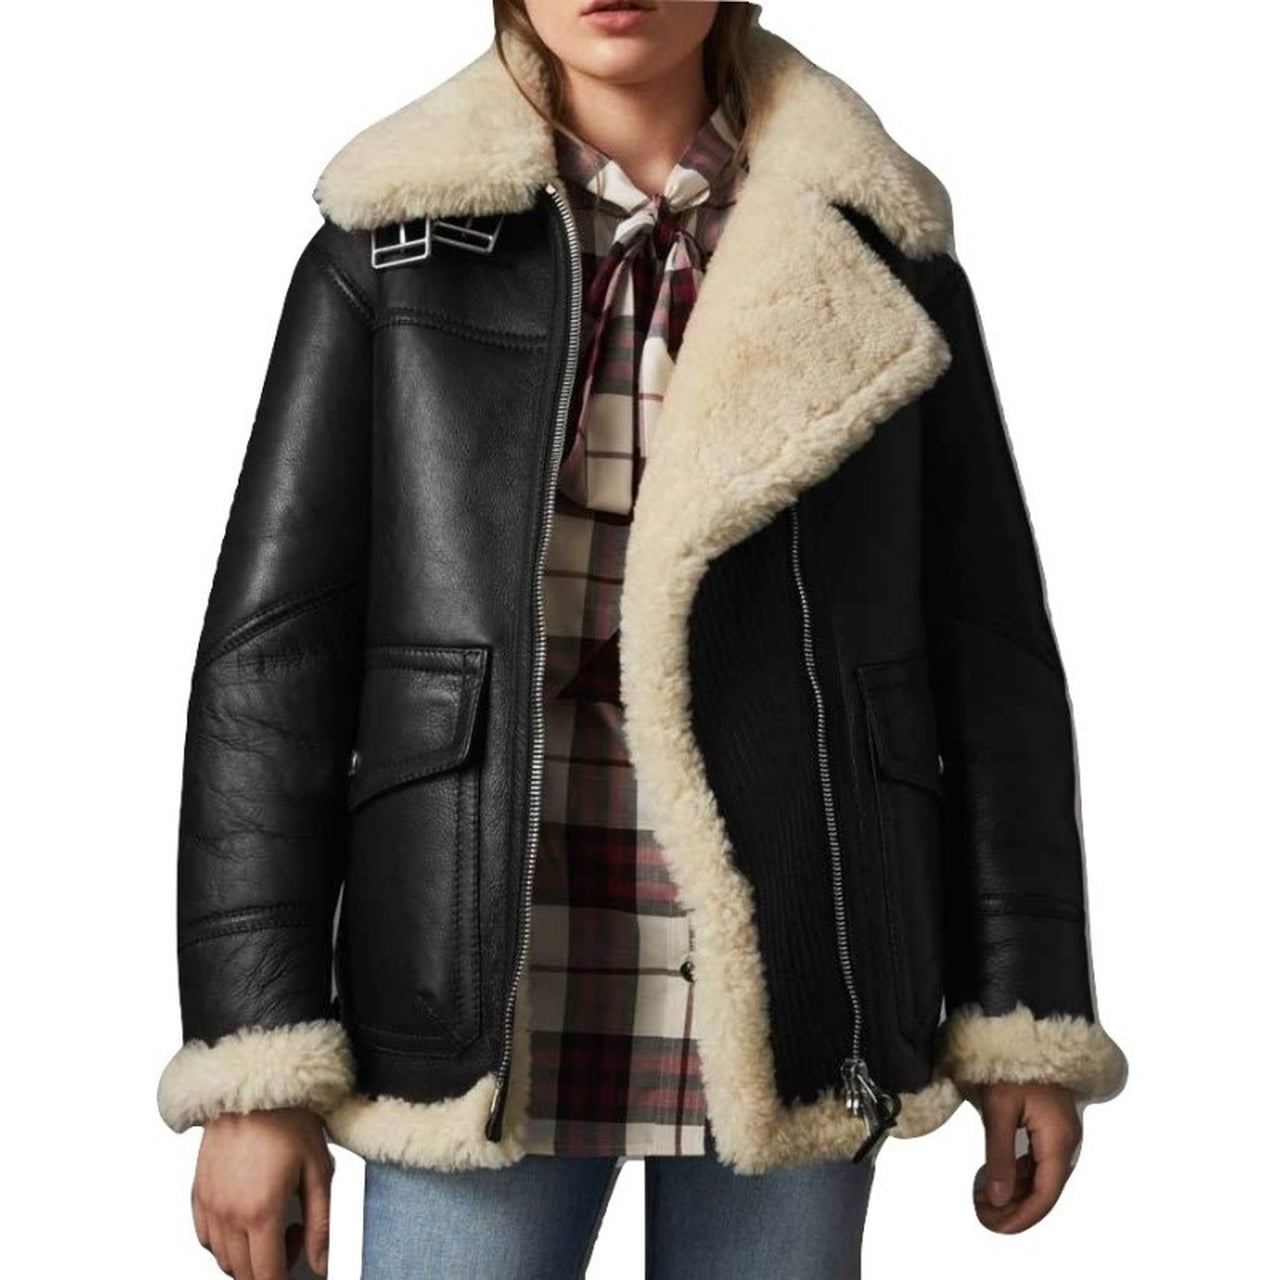 Stylish Black FUR Sheepskin Leather Jacket for Women - Leather Jacket